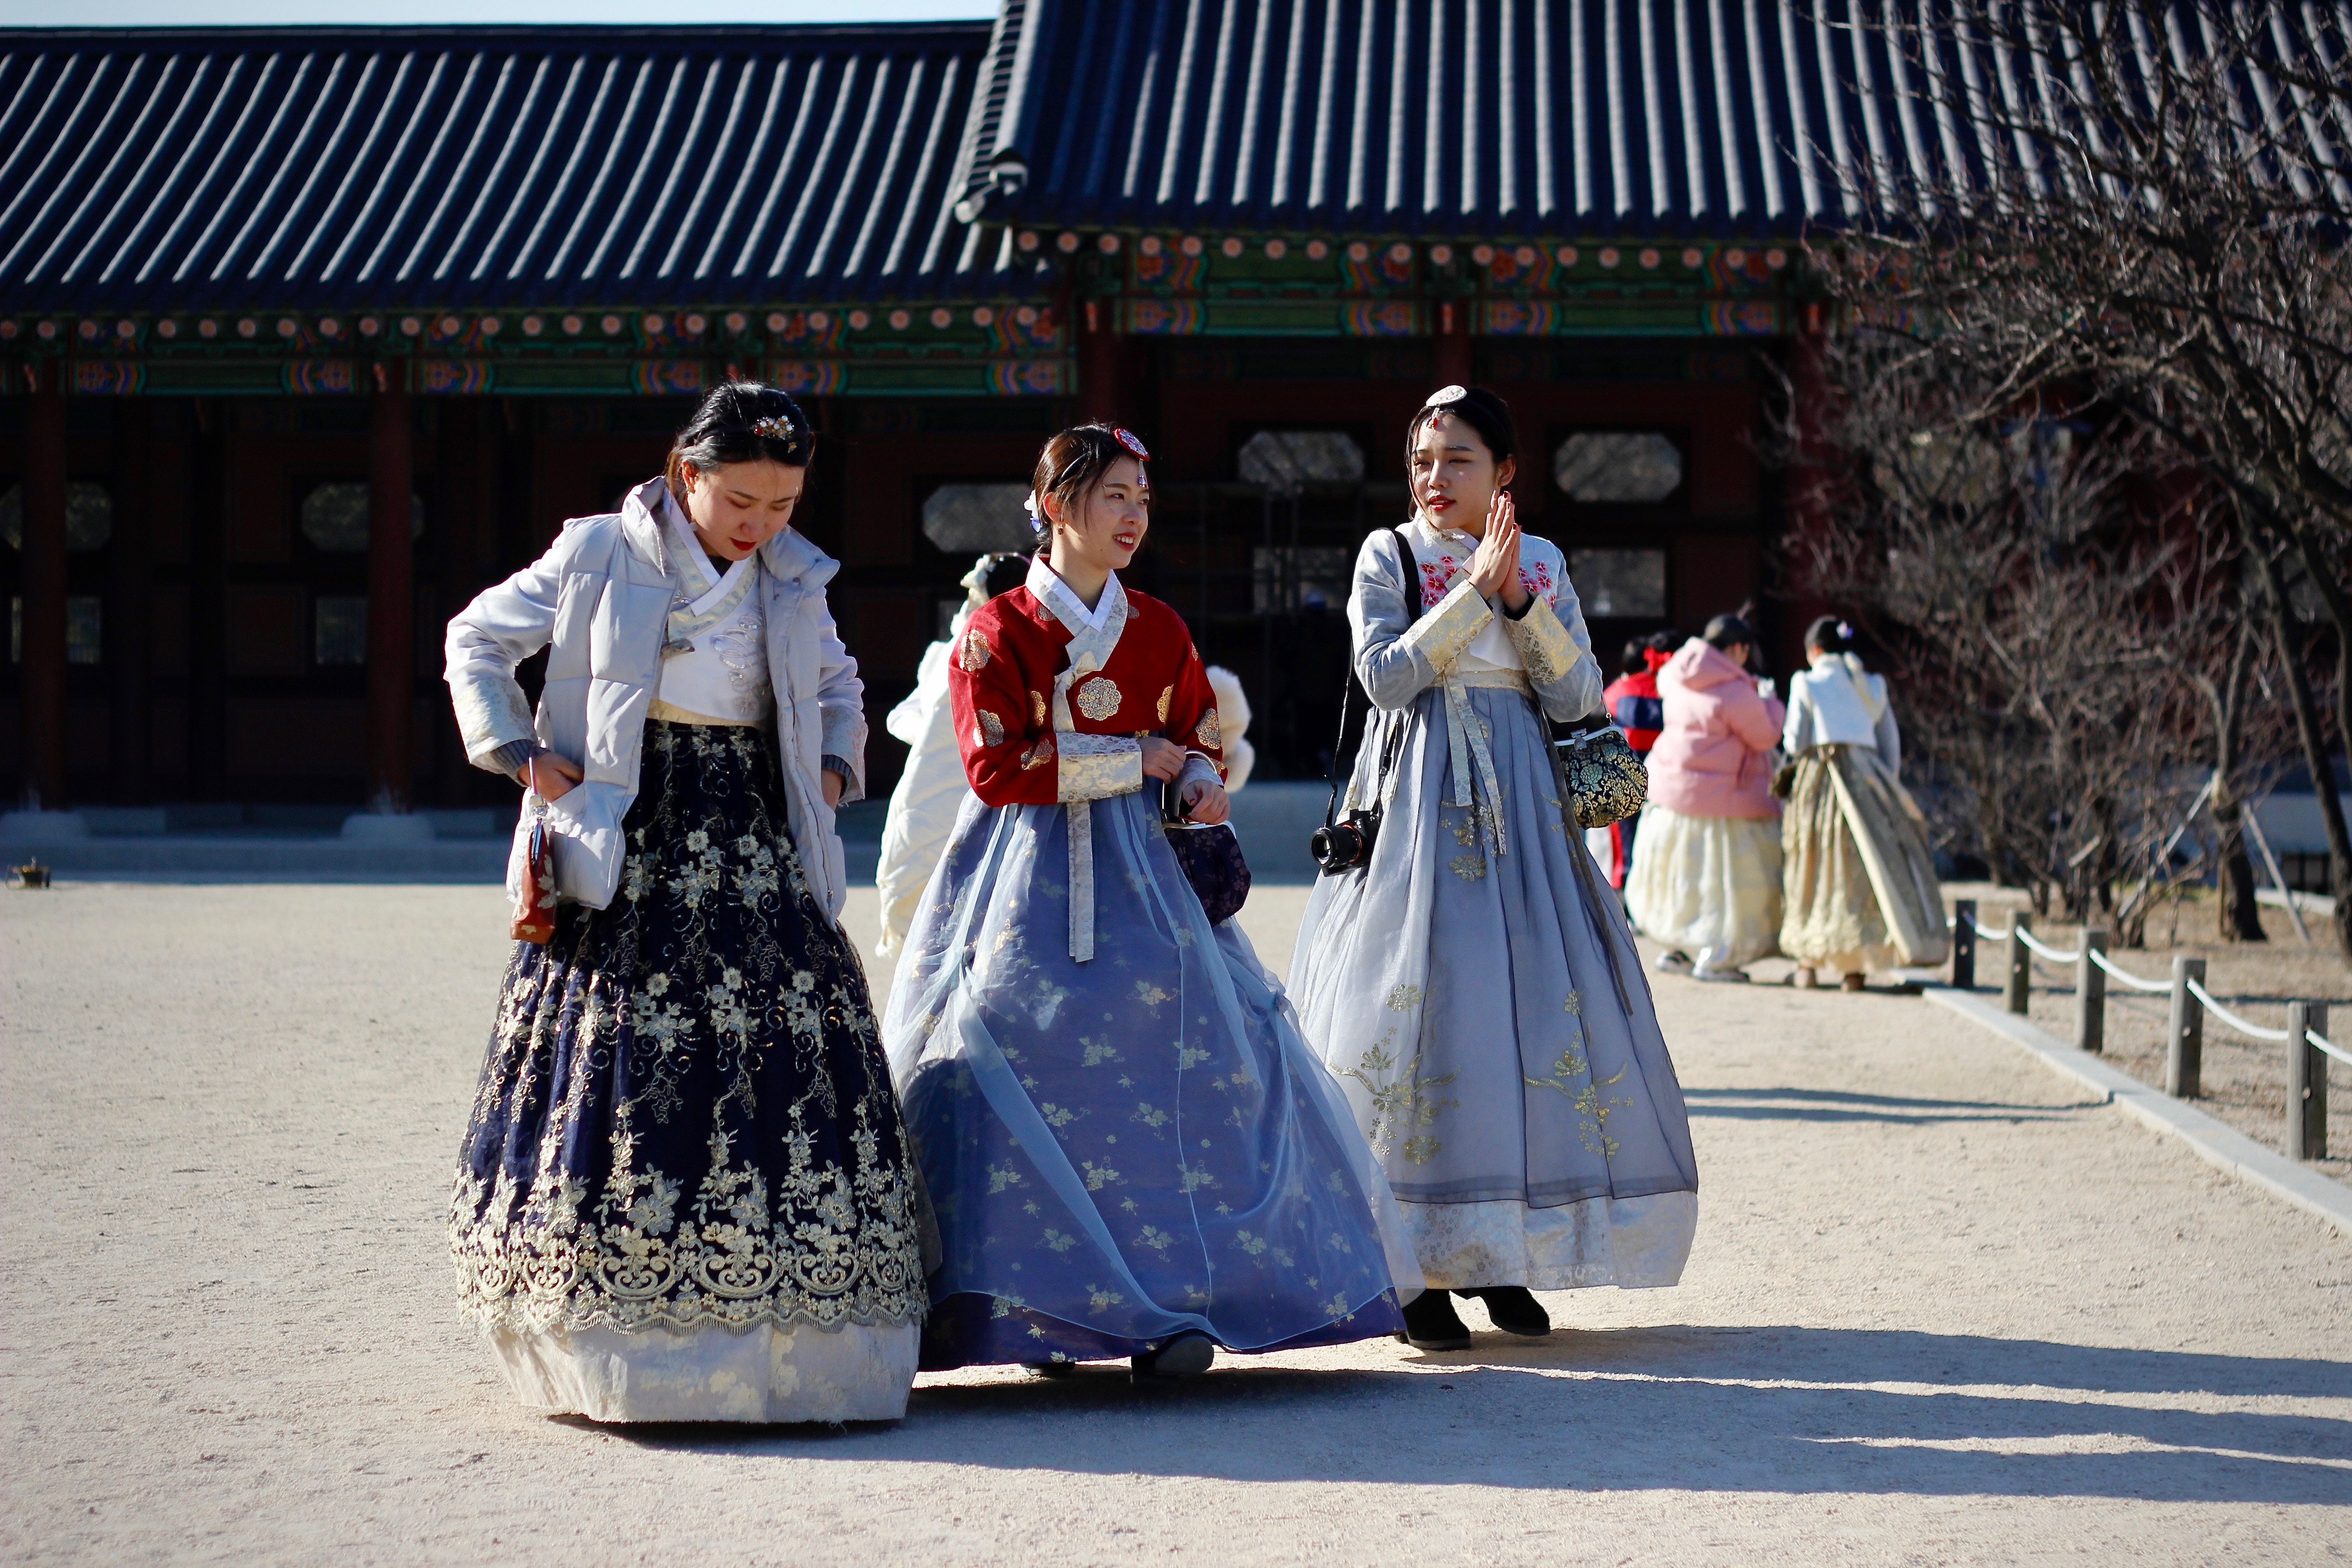 Du học Hàn Quốc sẽ mang đến cho bạn một cái nhìn chân thực về xã hội và văn hoá của người Hàn Quốc